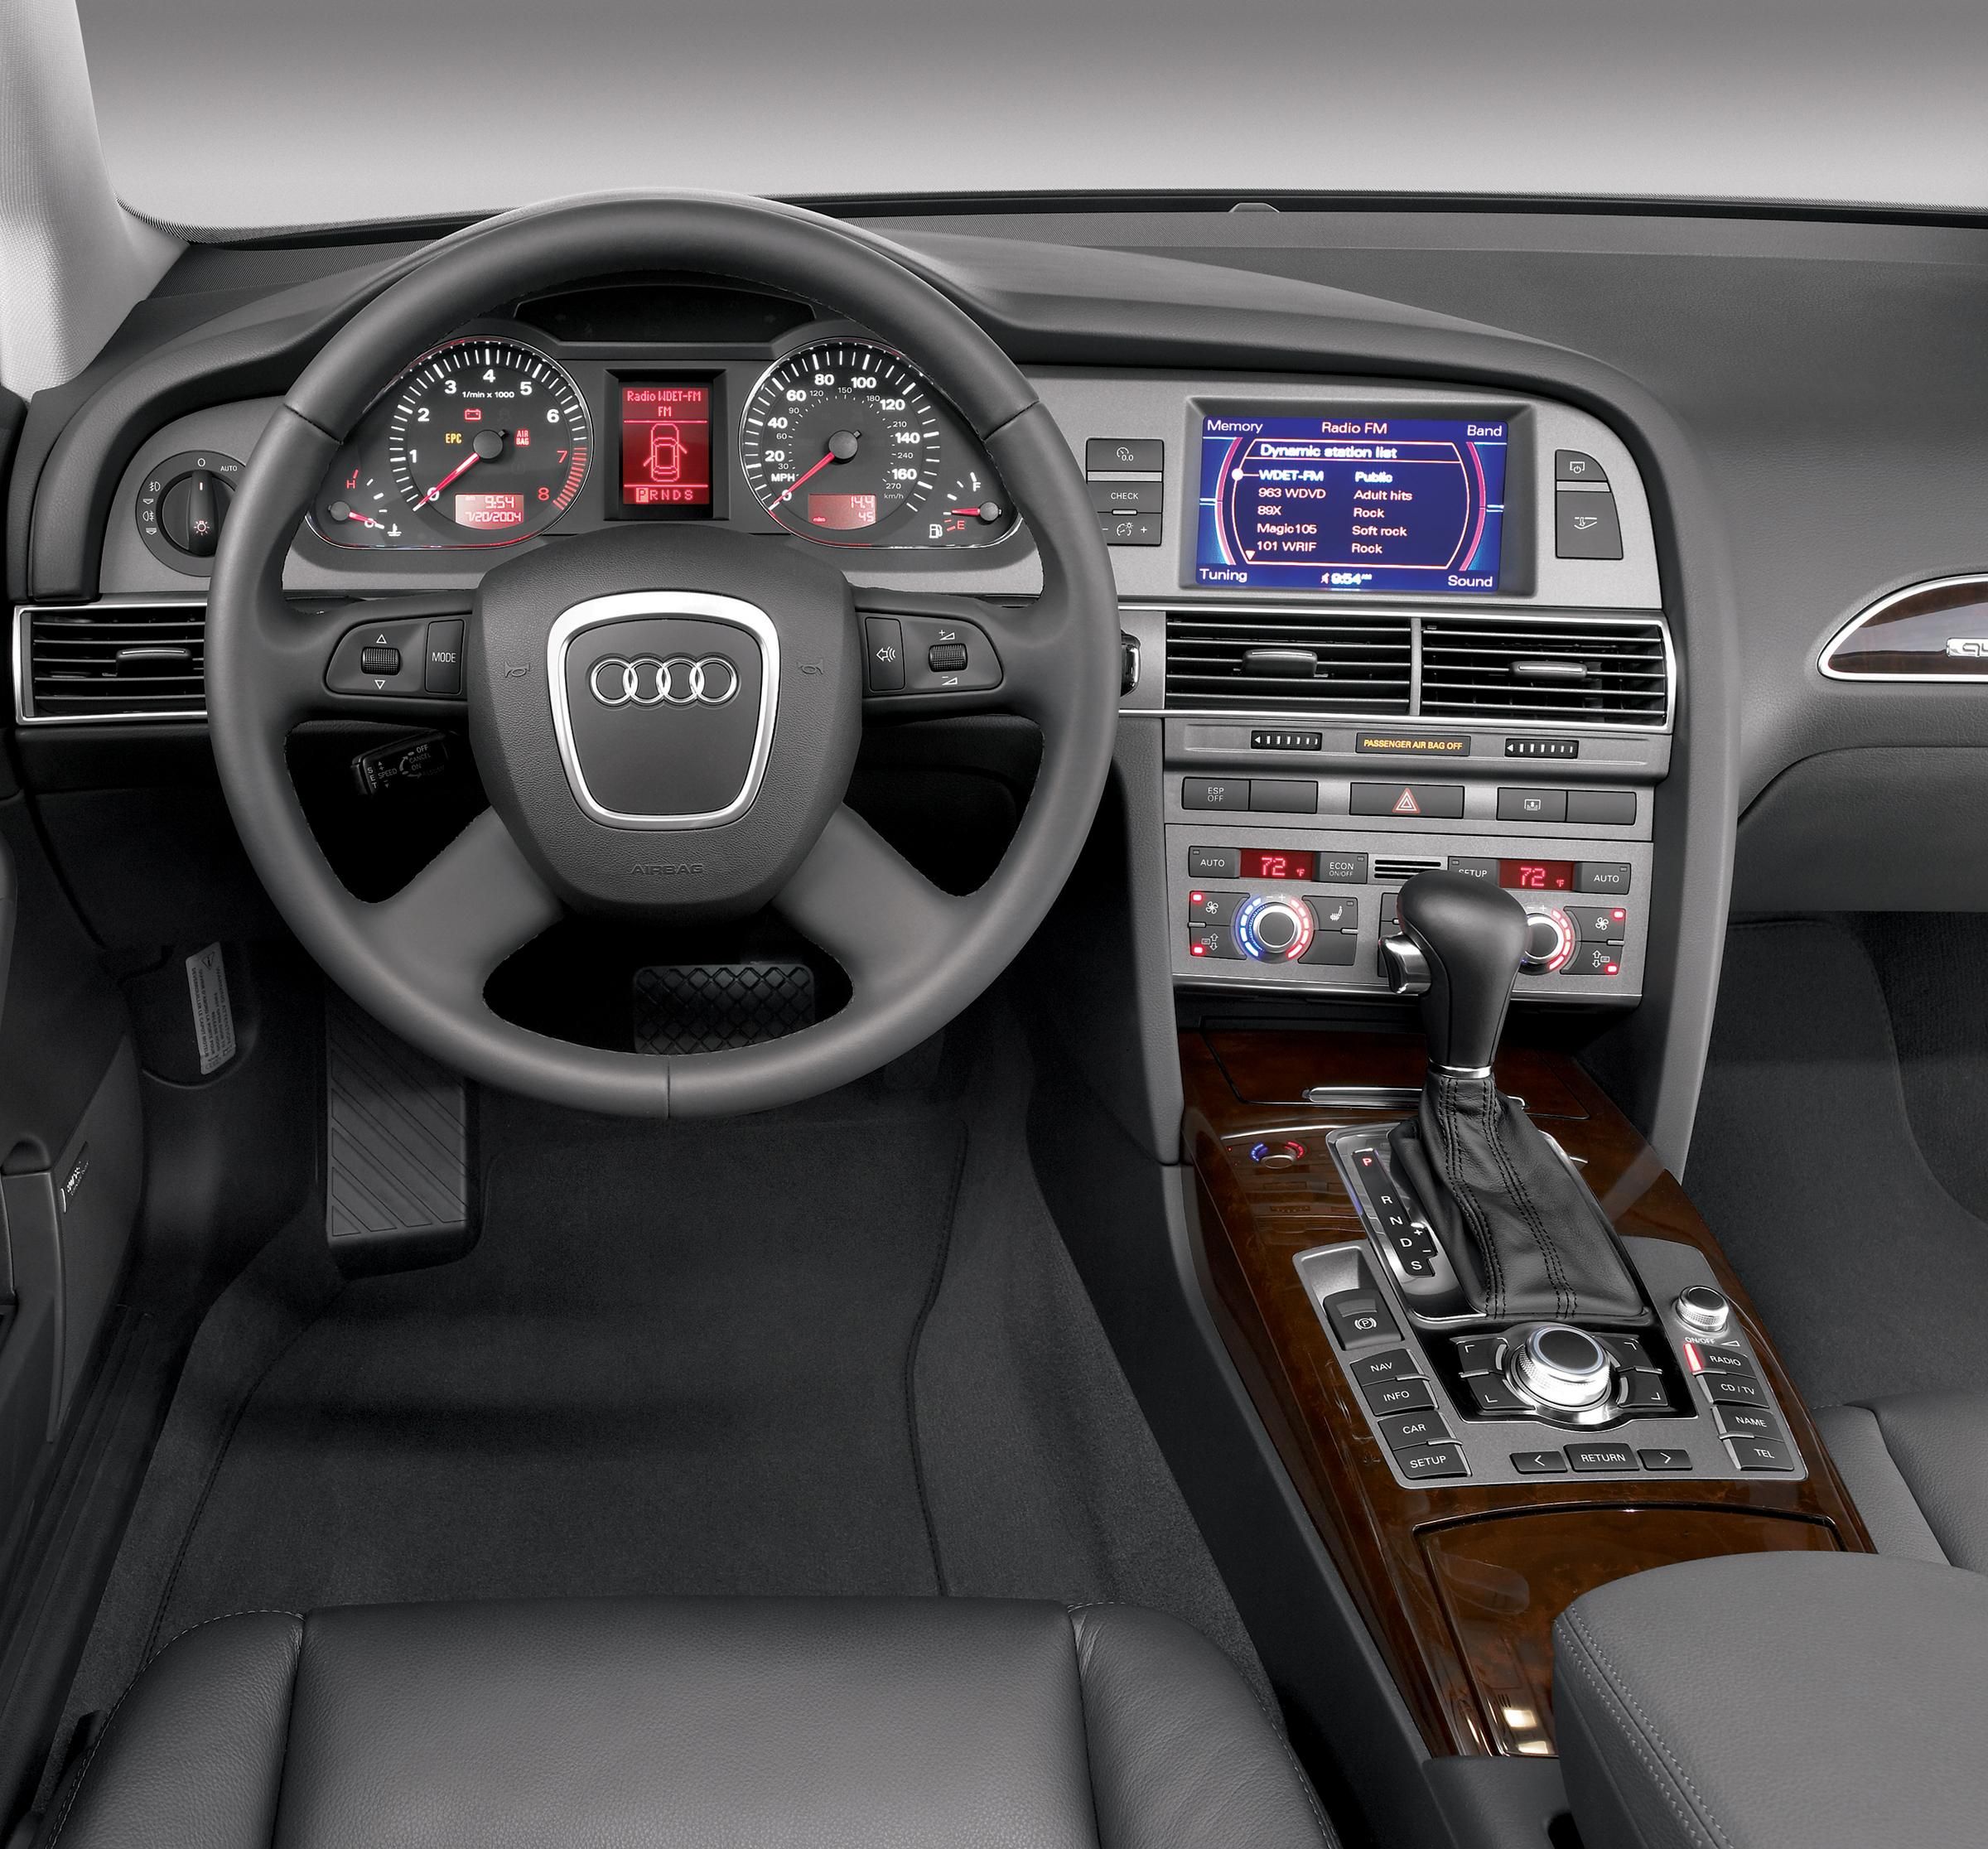 Audi a6 c5 кузове